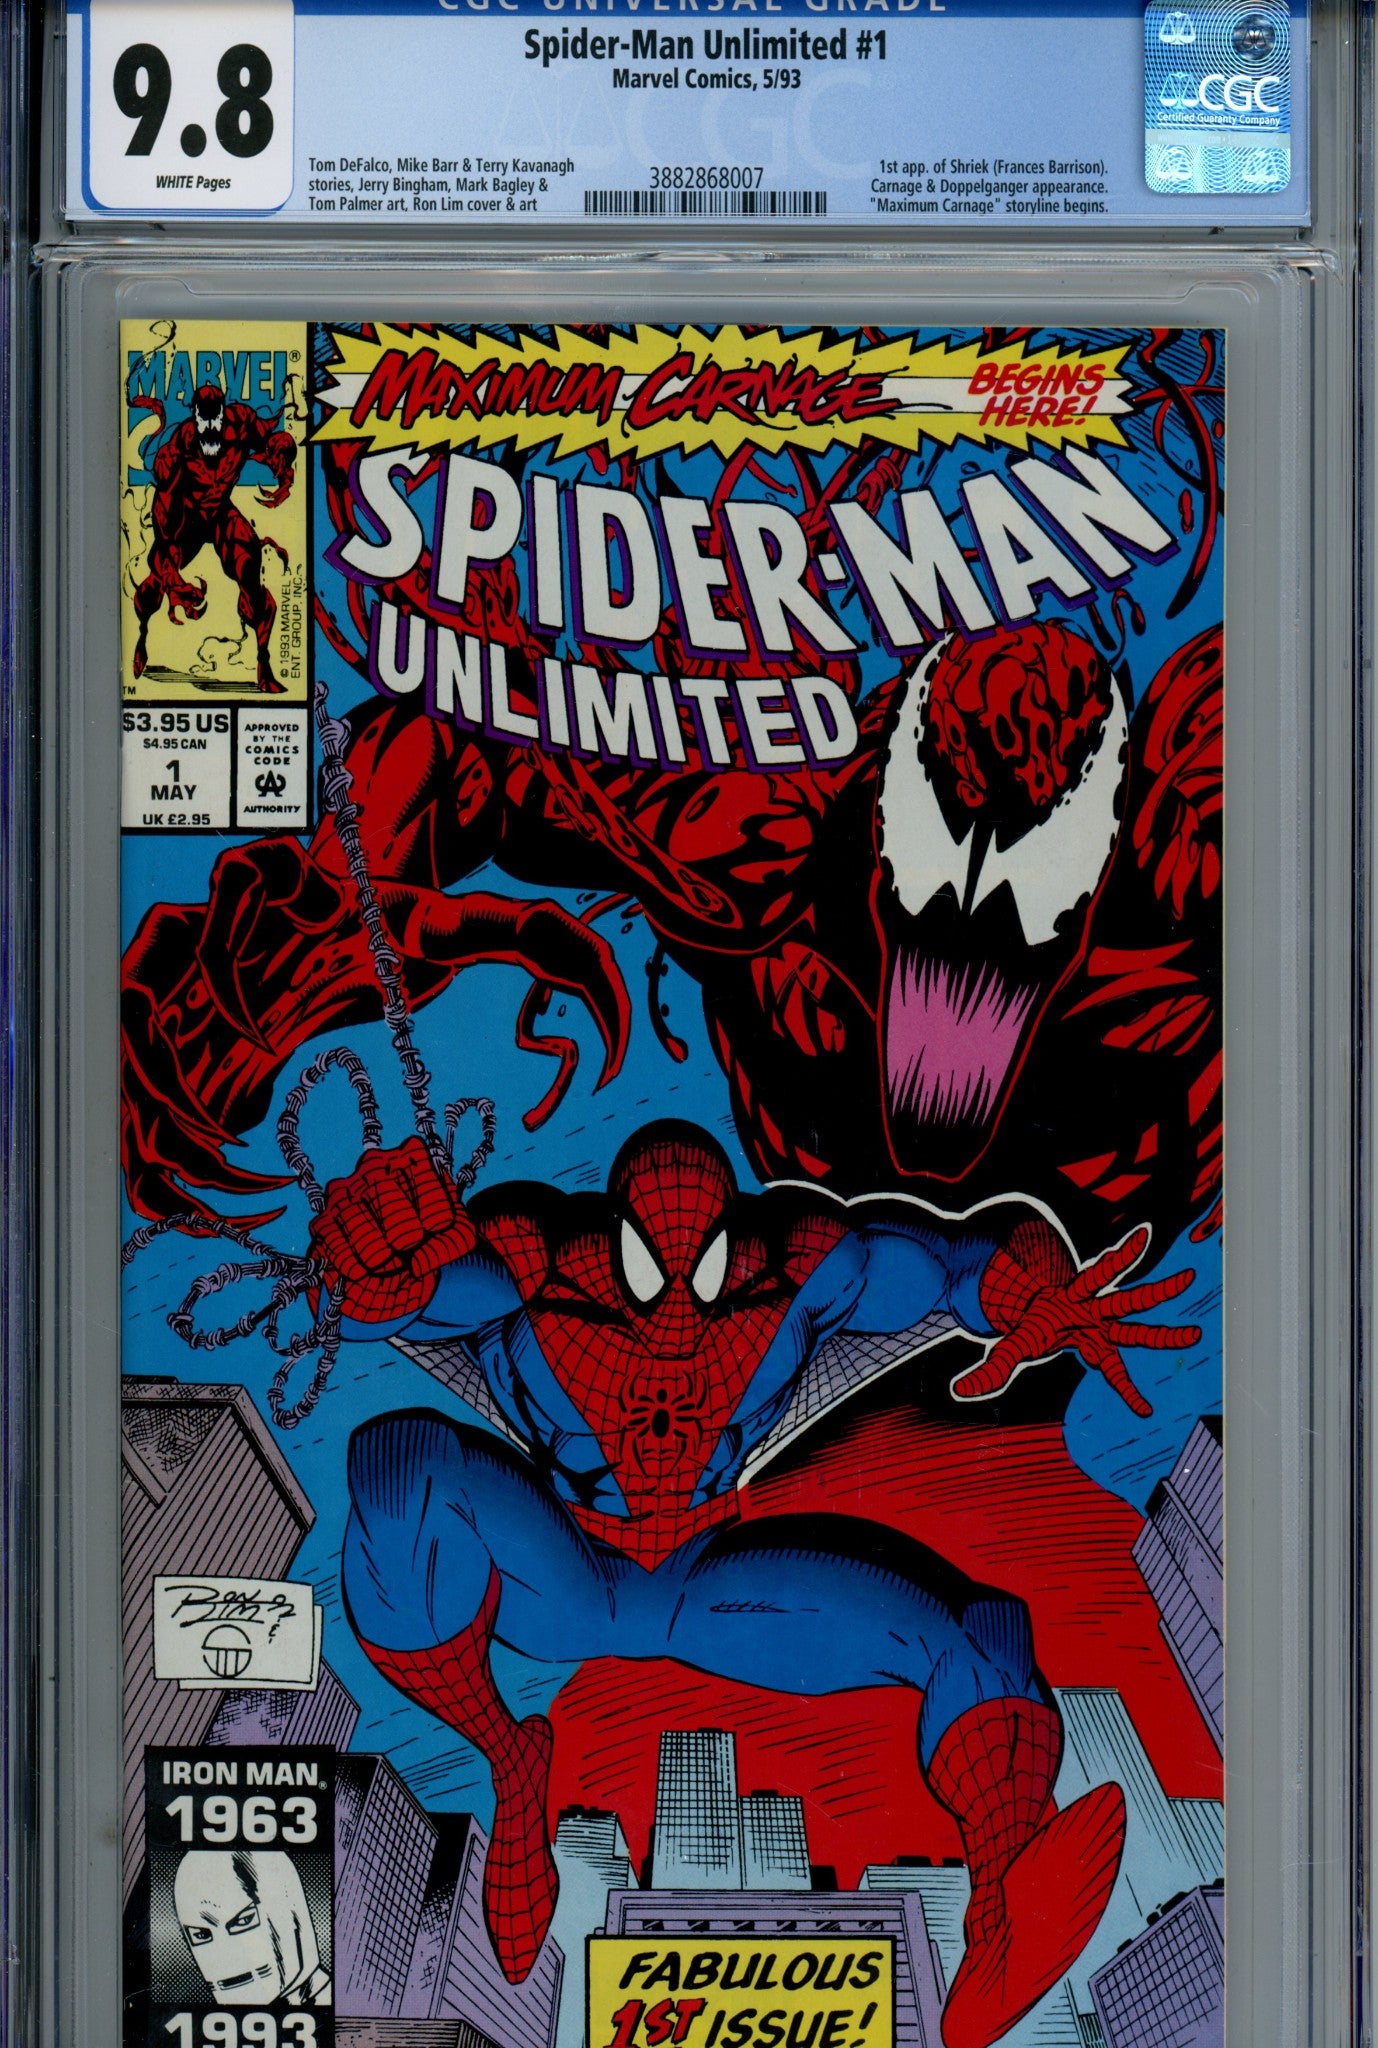 Spider-Man Unlimited Vol 1 1 CGC 9.8 (1993)